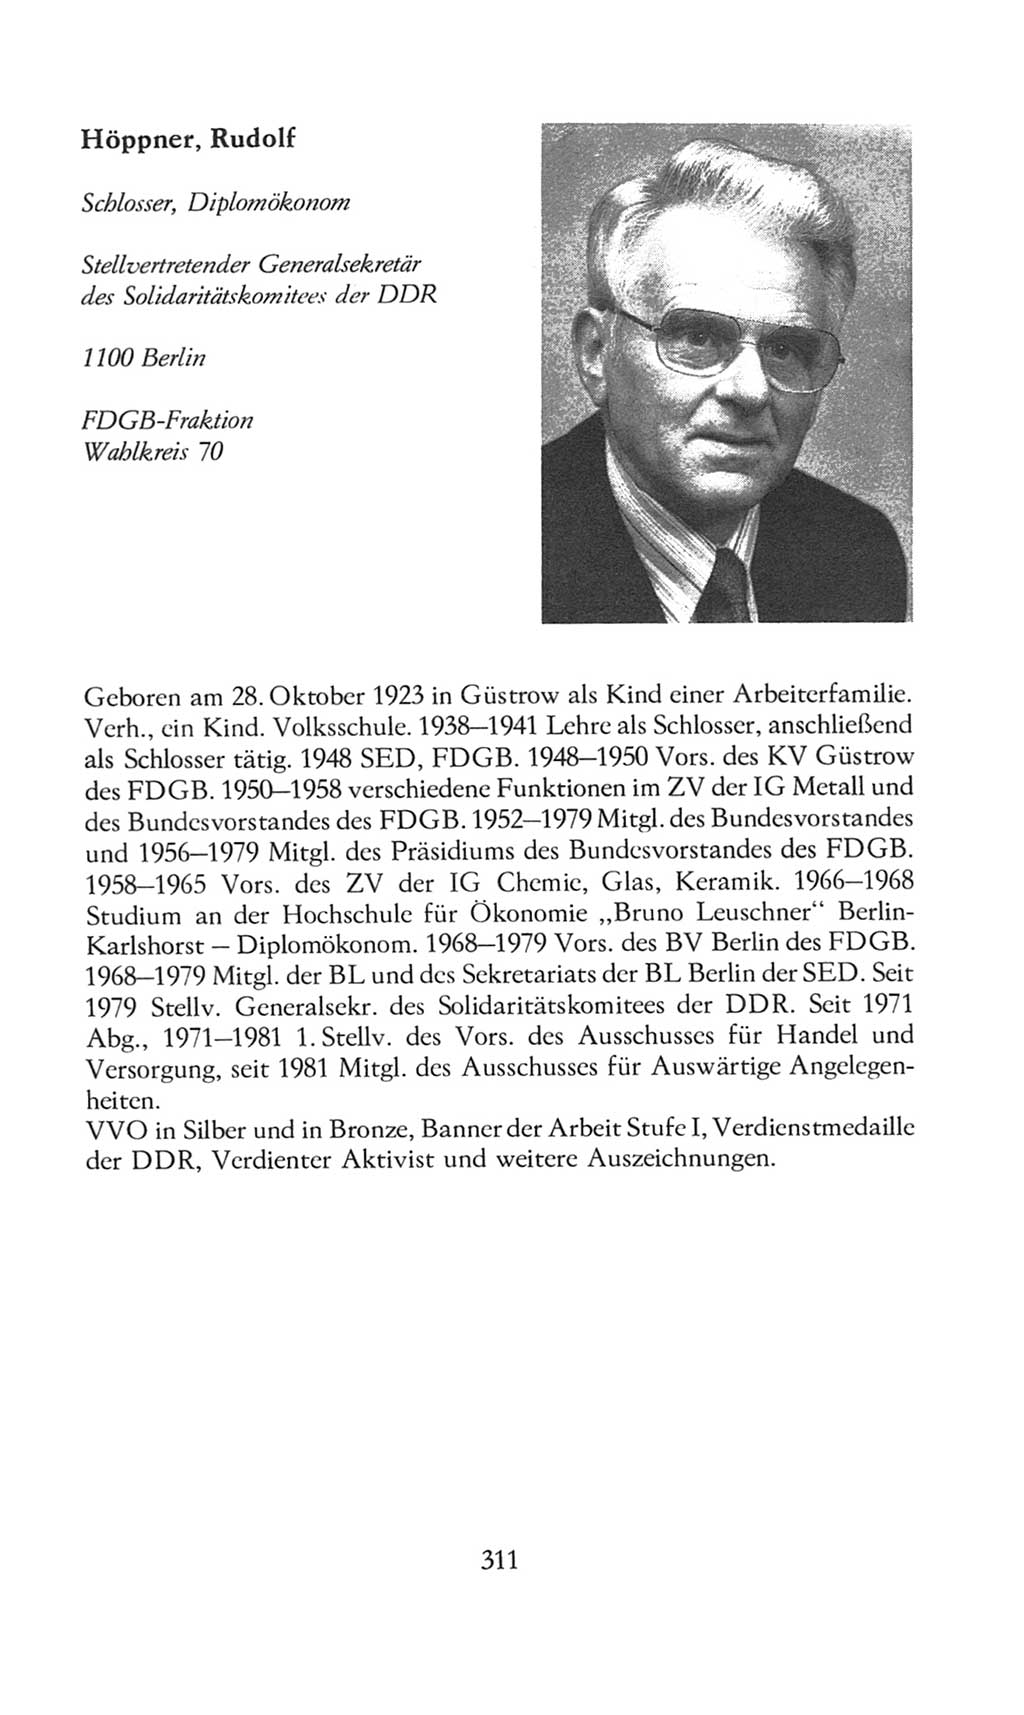 Volkskammer (VK) der Deutschen Demokratischen Republik (DDR), 8. Wahlperiode 1981-1986, Seite 311 (VK. DDR 8. WP. 1981-1986, S. 311)